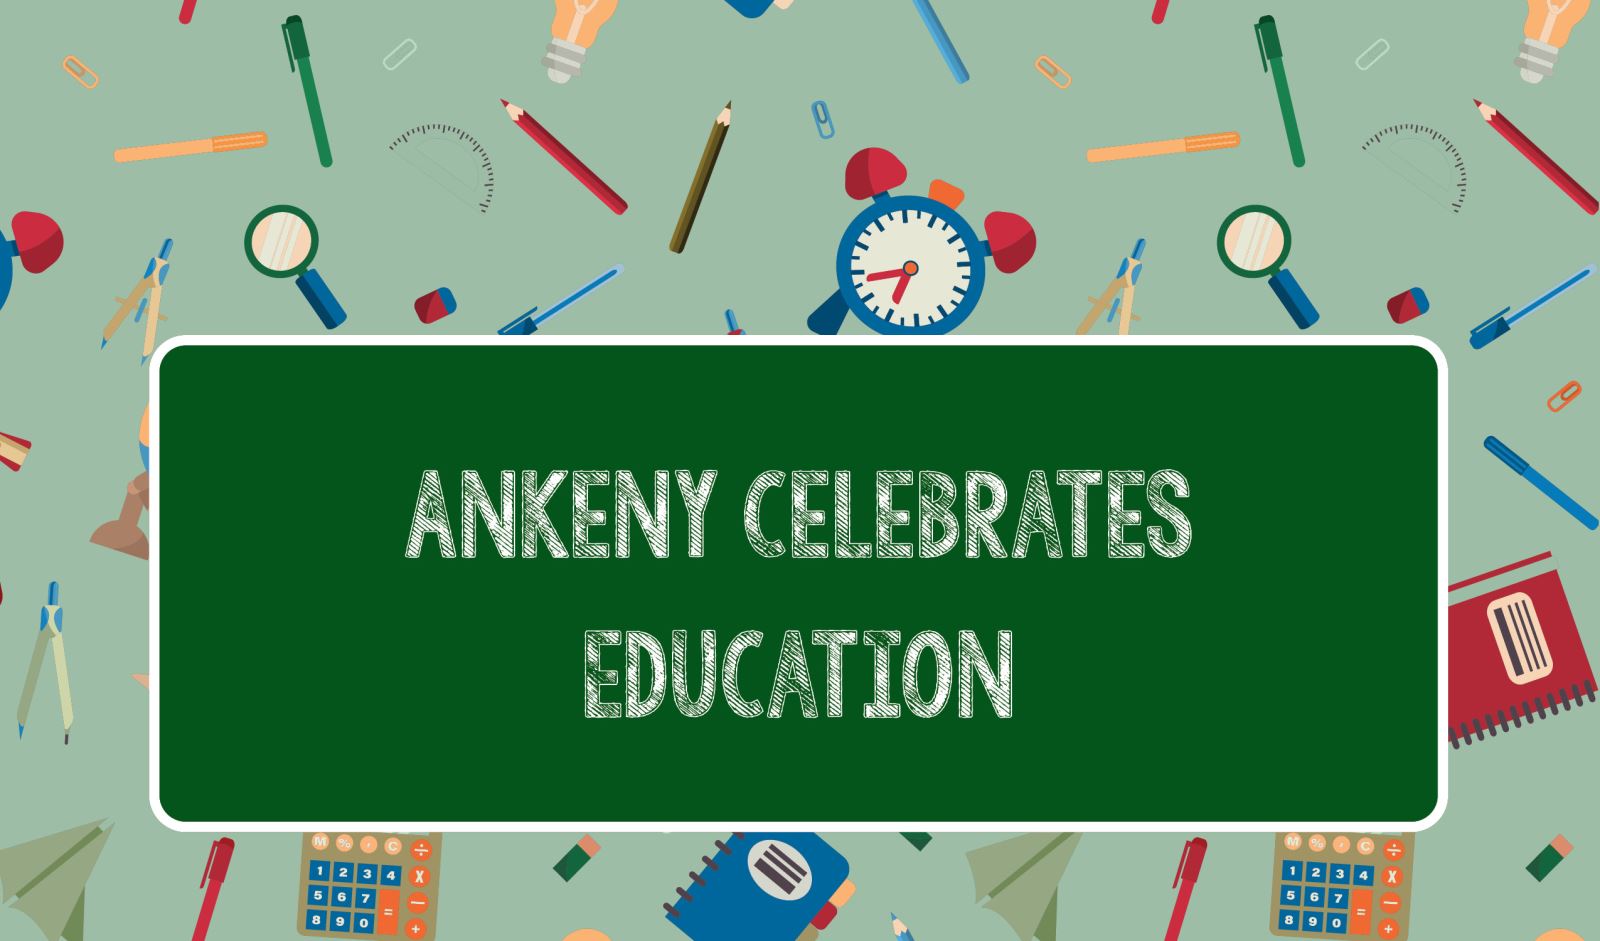 Ankeny Celebrates Education - Ankeny Celebrates Education - Northwest Bank